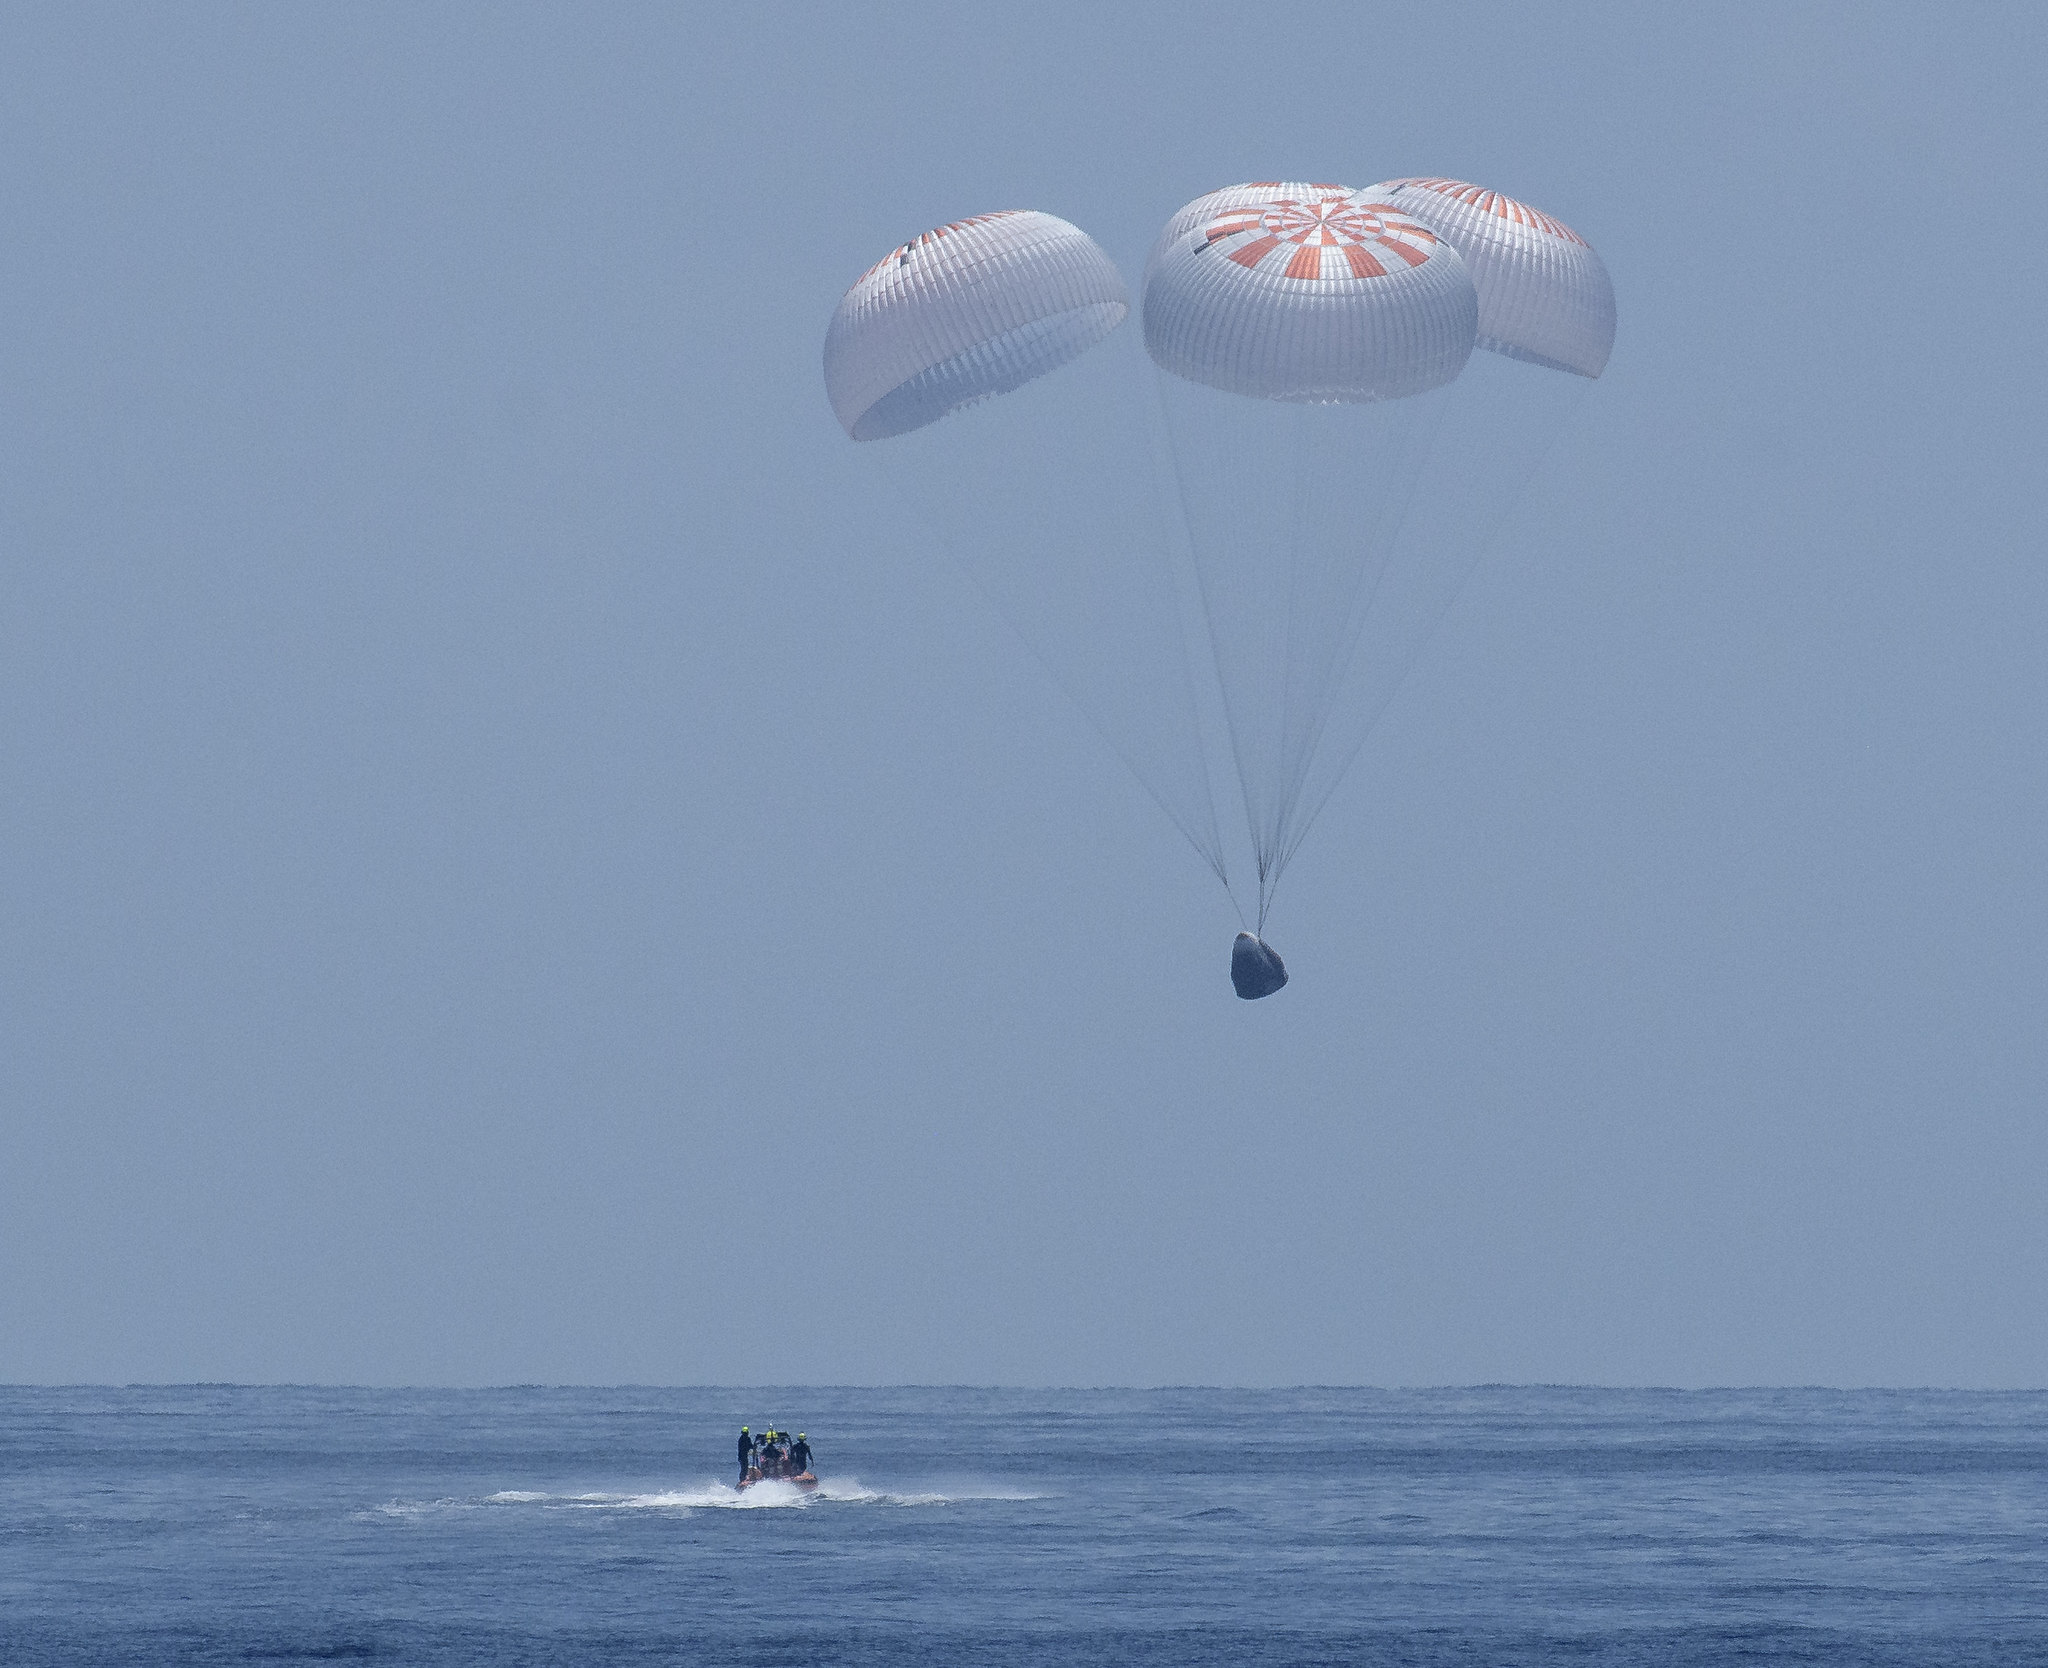 Фото: как происходила посадка модуля Crew Dragon в океане